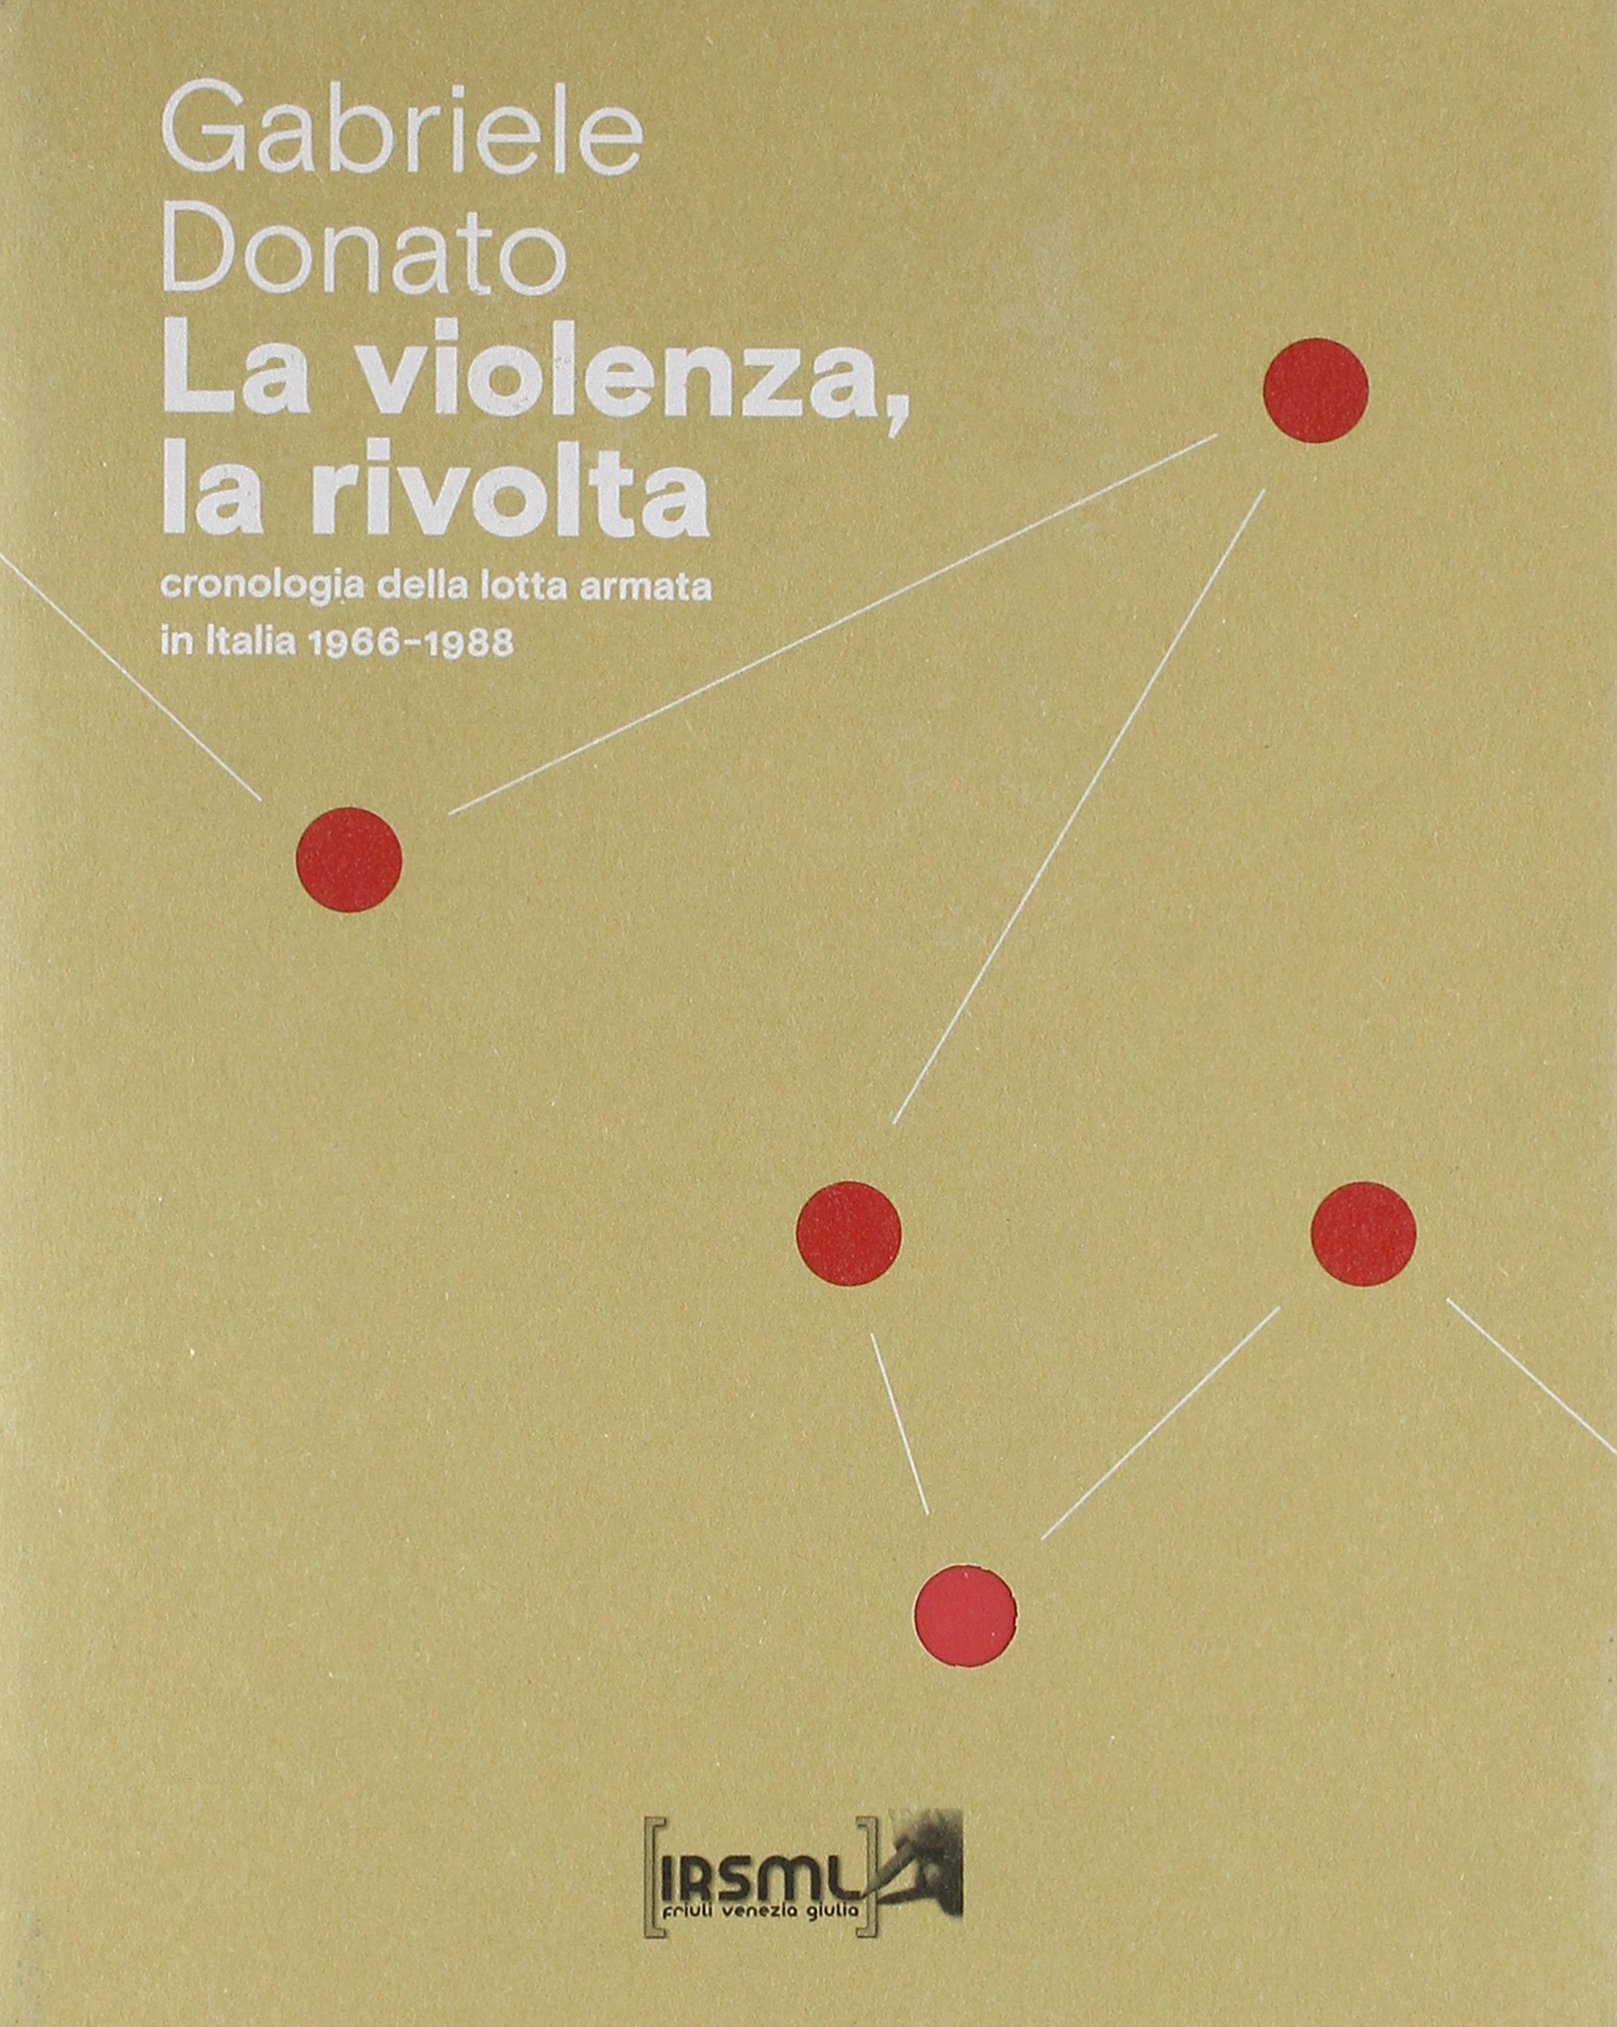 Gabriele DONATO, La violenza, la rivolta. Cronologia della lotta armata in Italia 1966-1988, Trieste, IRSML, 2018, 417 pp.